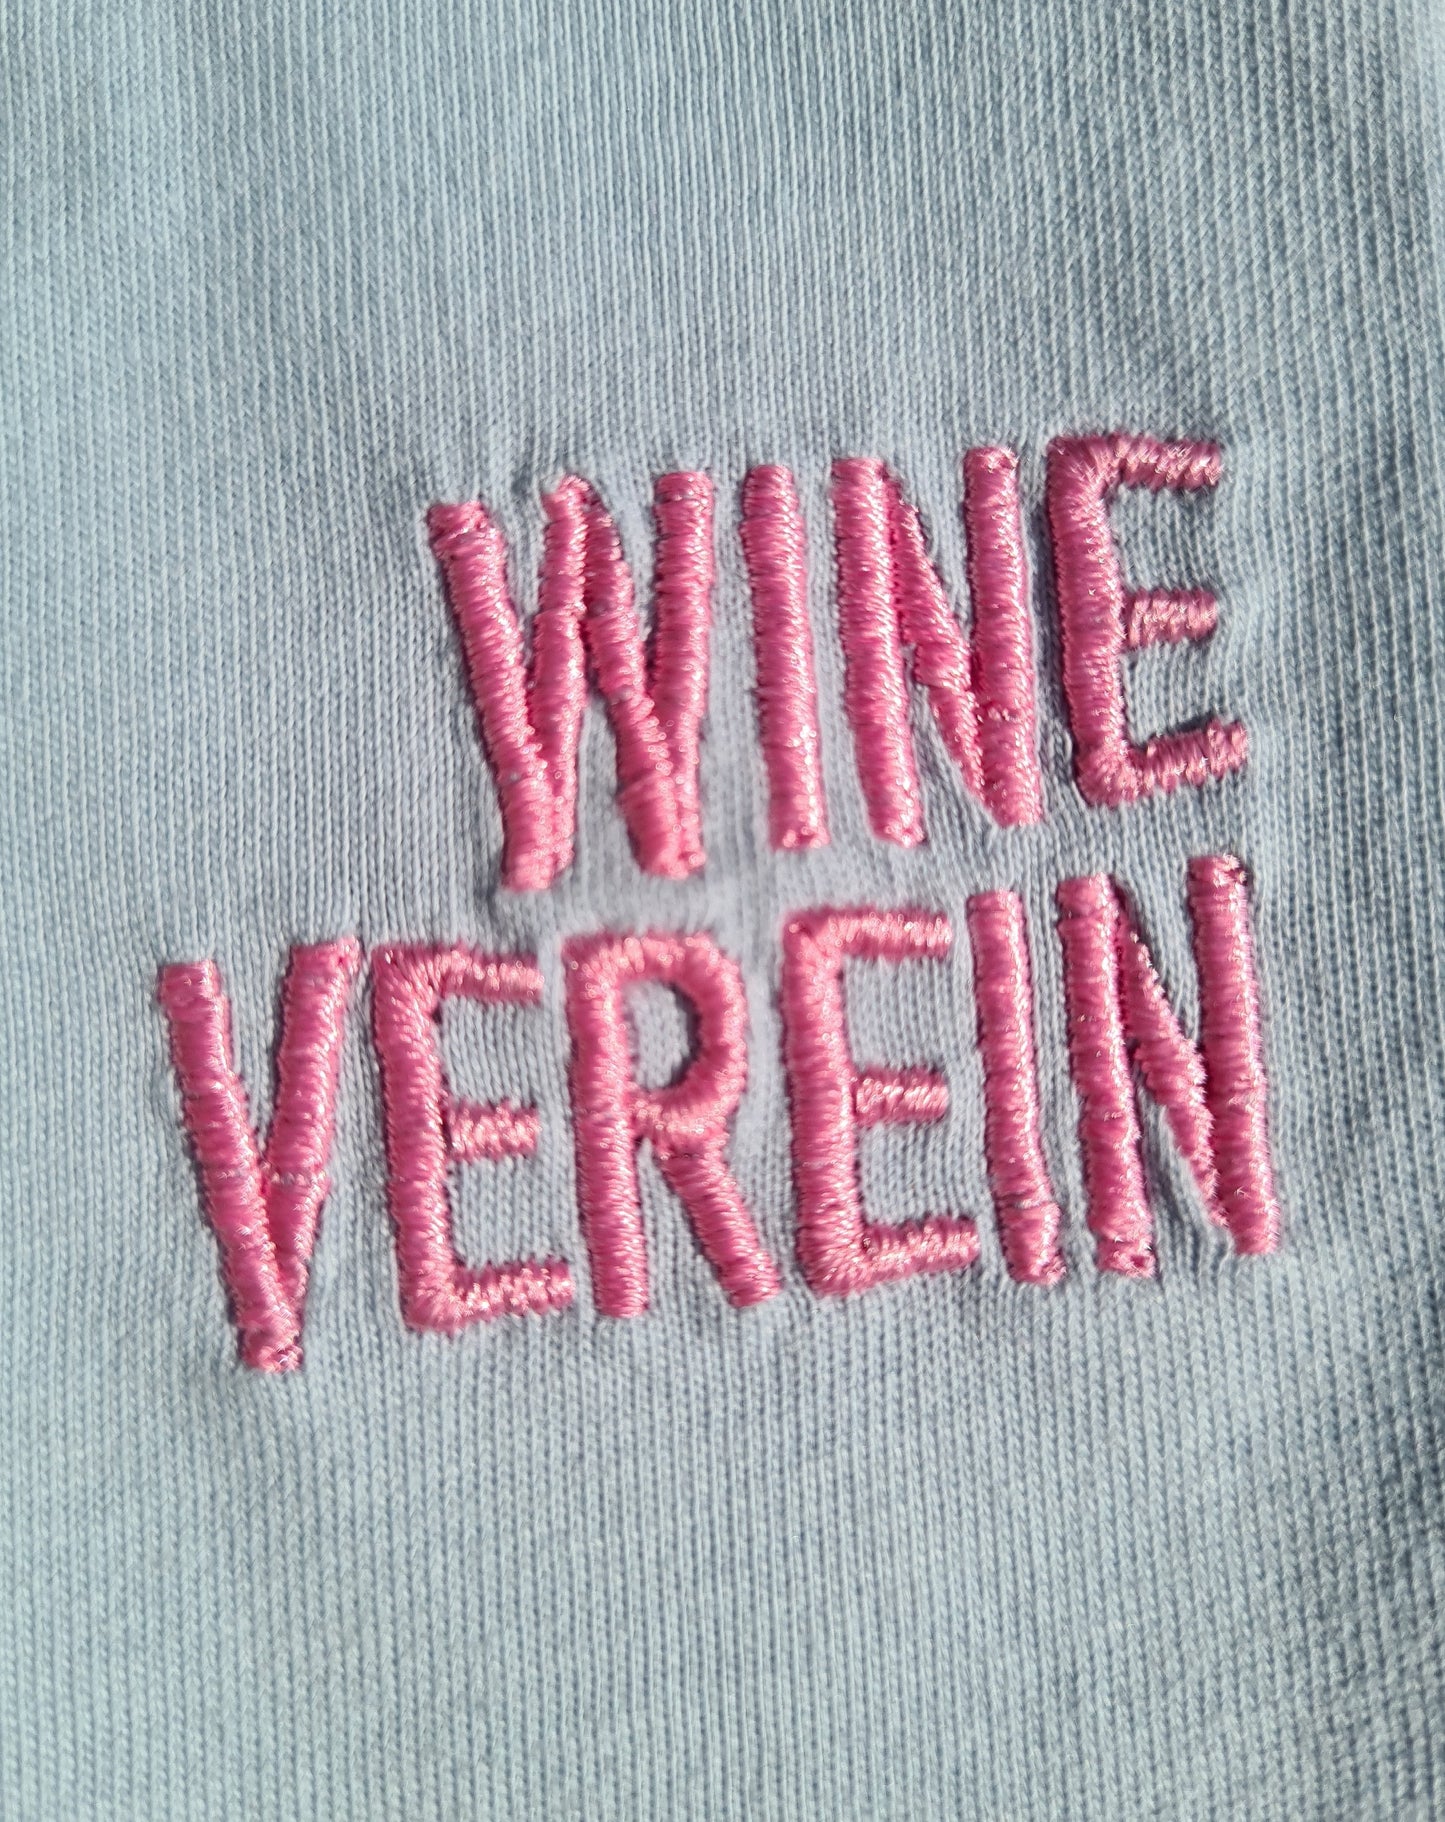 "Wine Verein" Unisex-Shirt